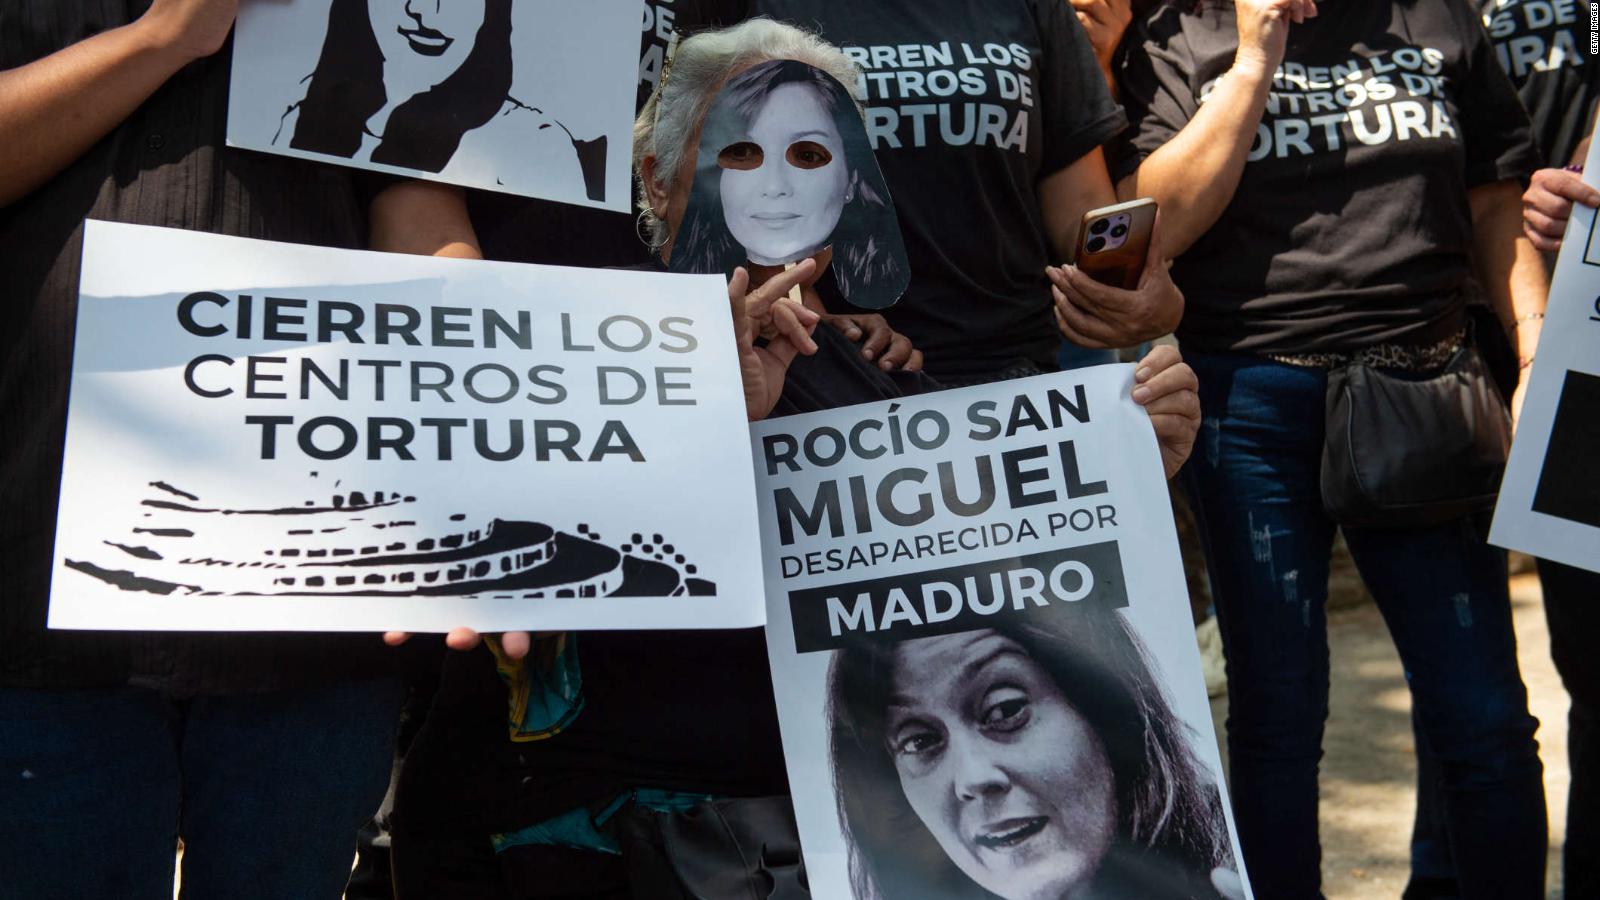 La acusación contra Rocío San Miguel es propia de un "gobierno autocrático", dice experta | Video